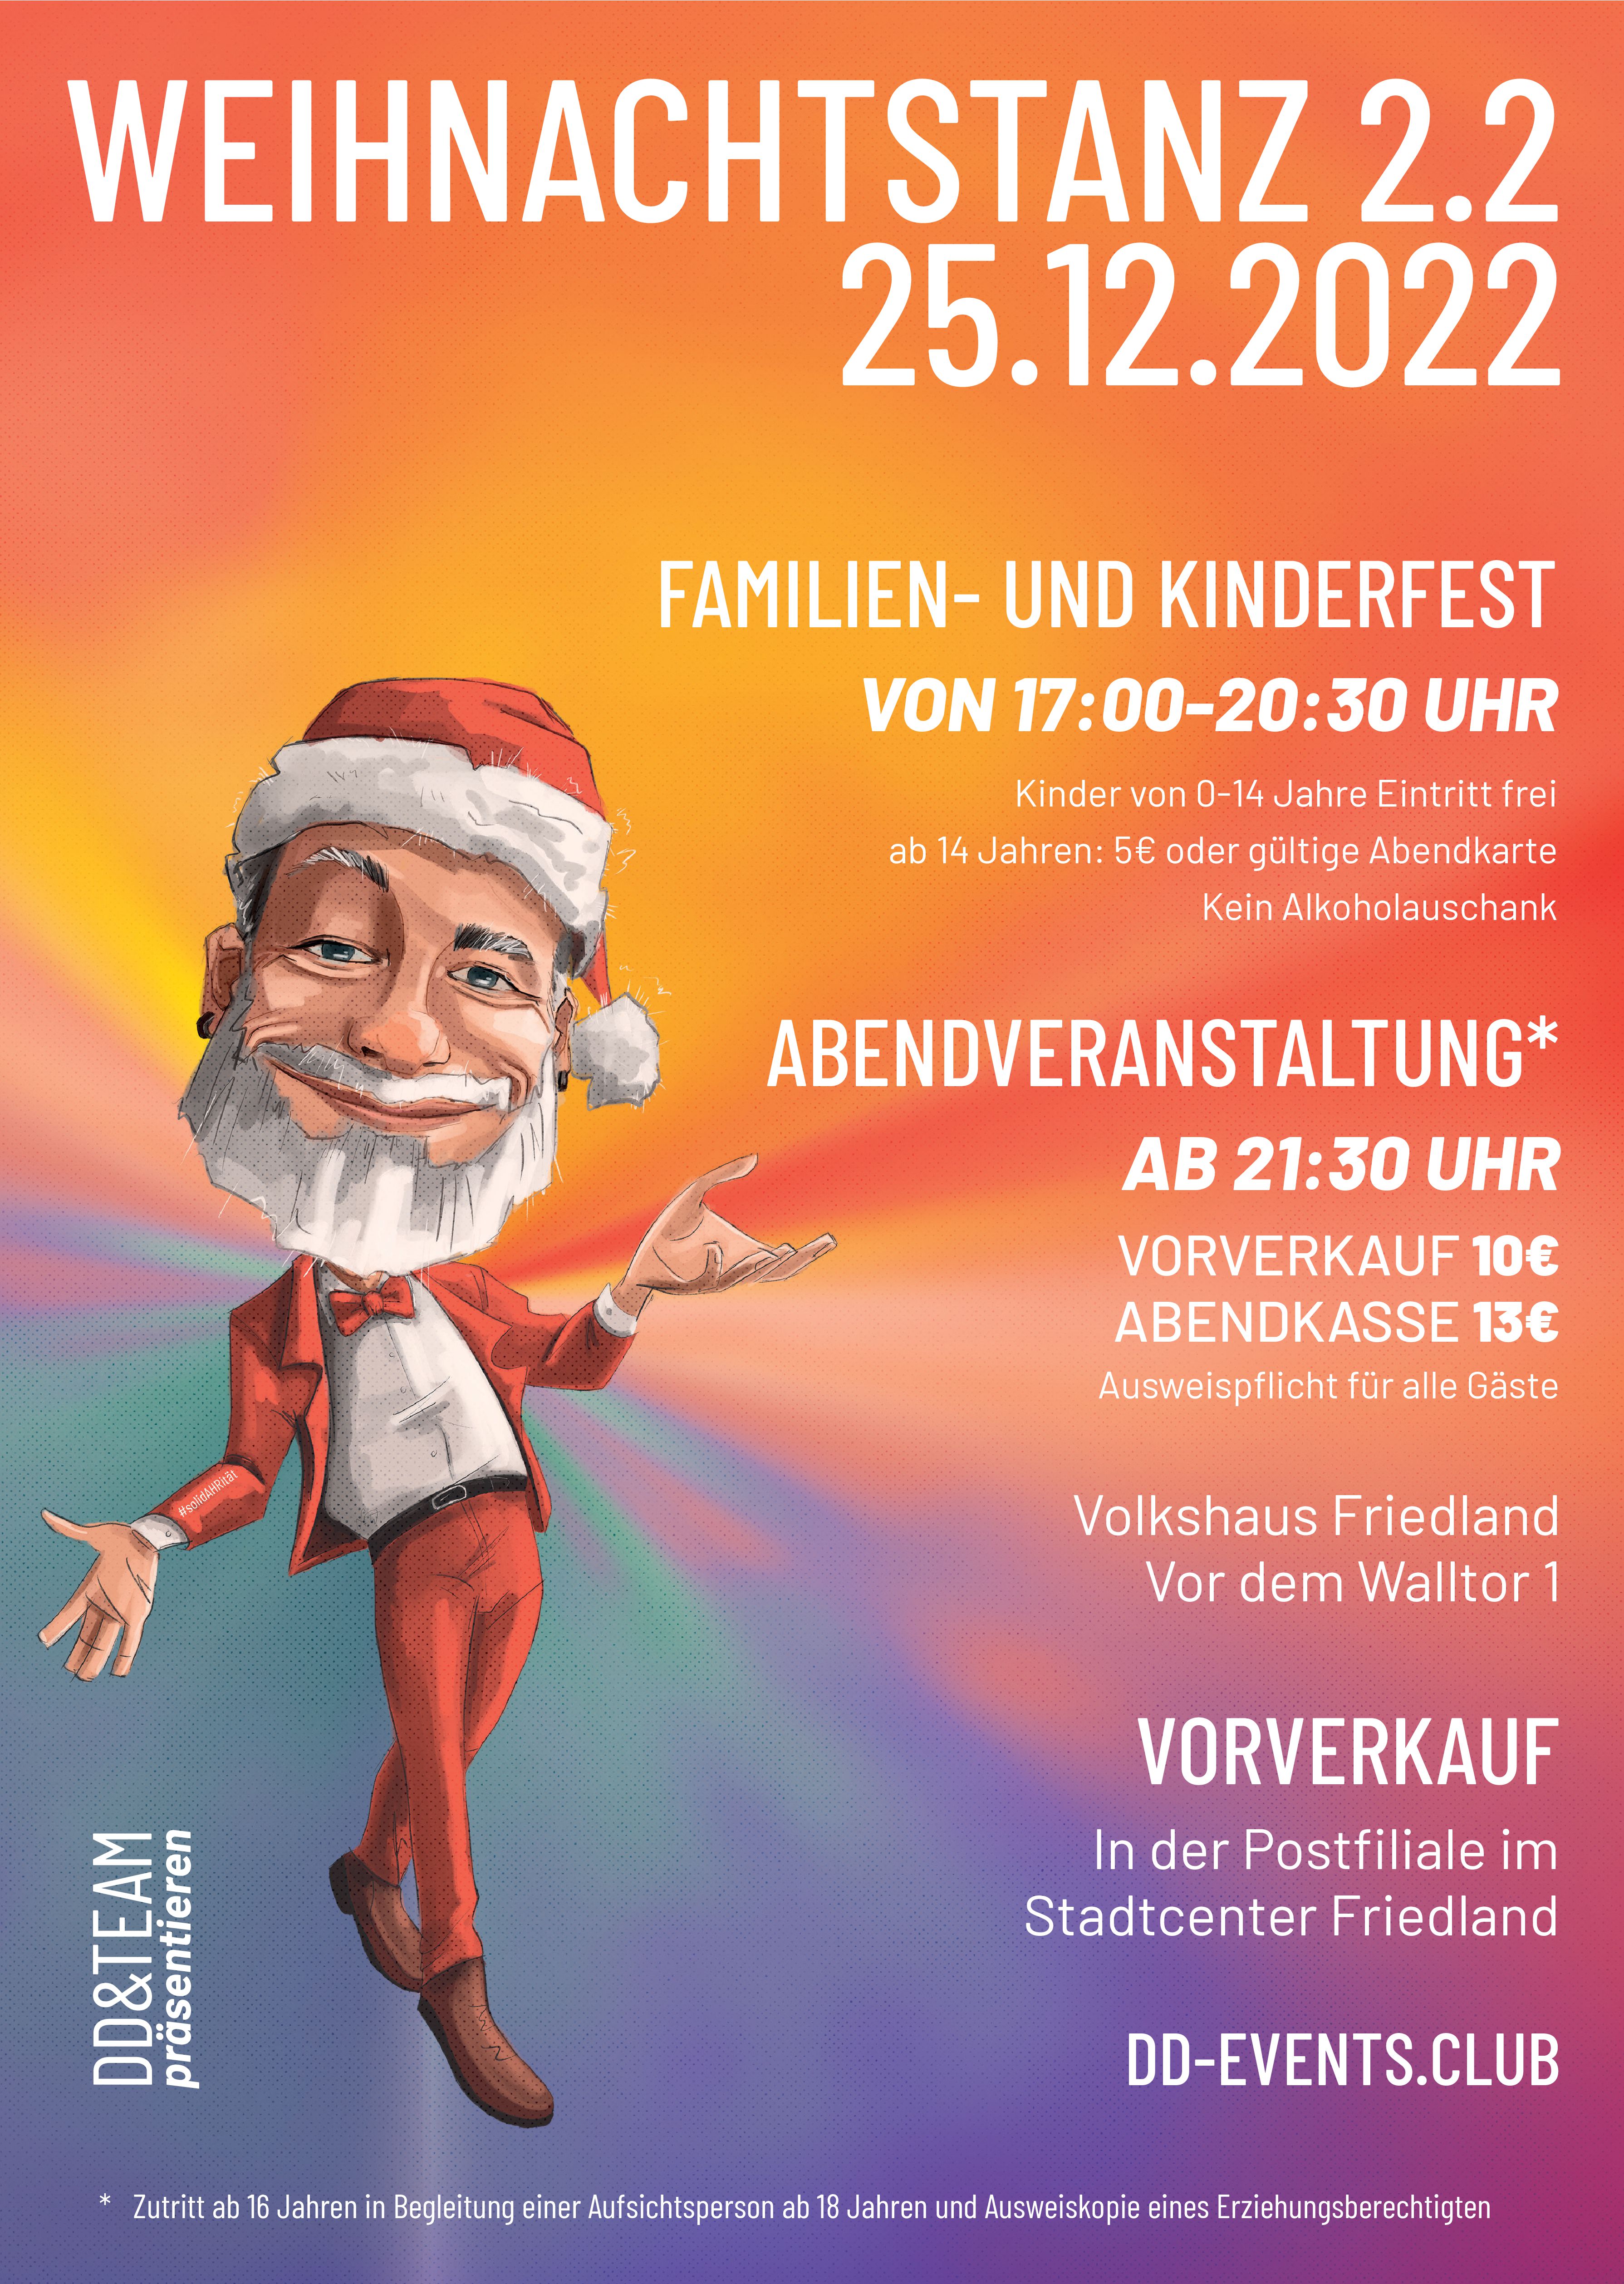 A3 Poster Weihnachtstanz 2022